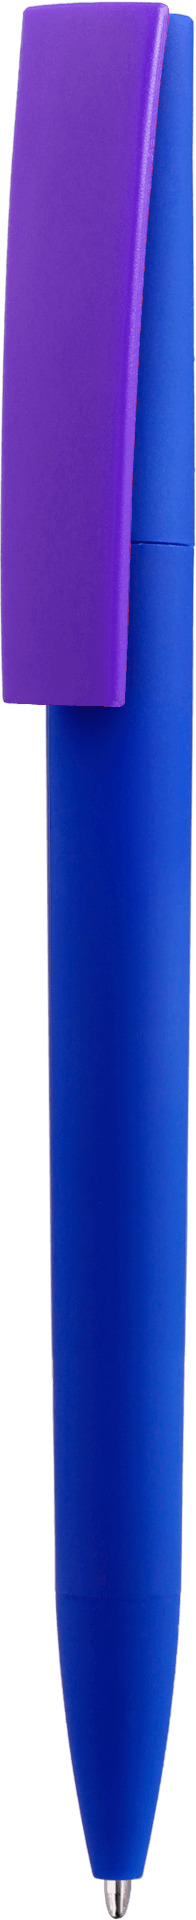 Ручка ZETA SOFT BLUE MIX, синяя с фиолетовым